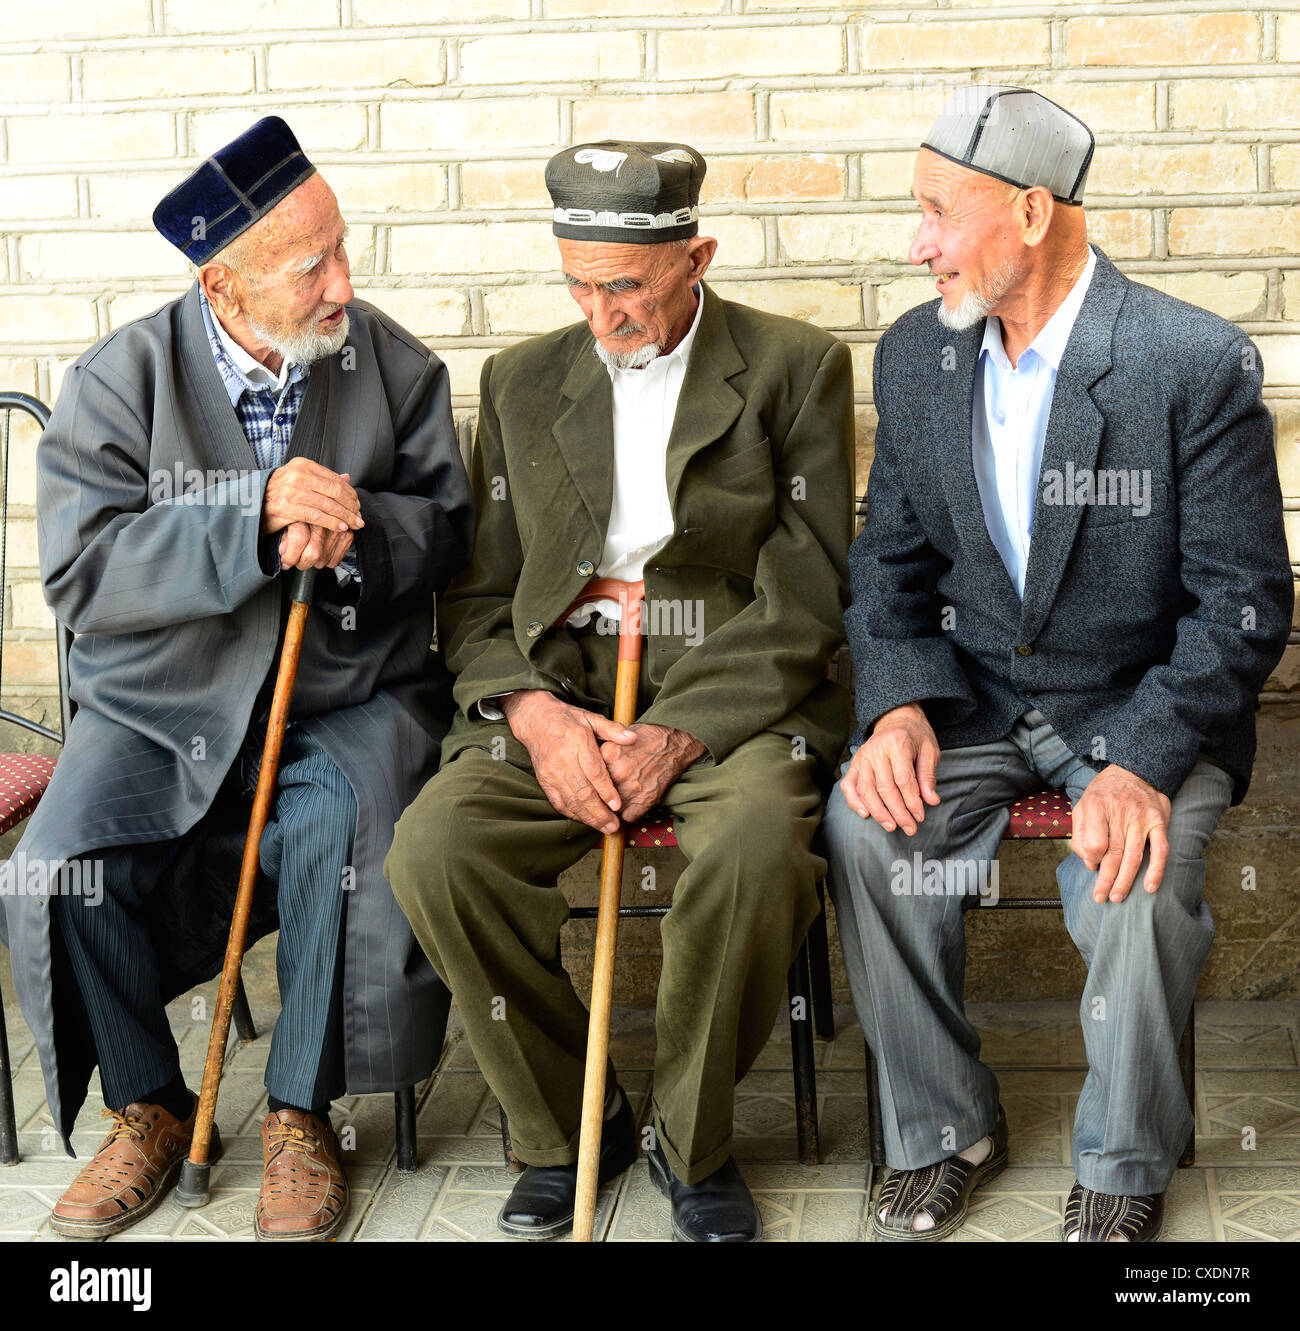 Personnes âgées Hommes tadjiks ( de l'Ouzbékistan) dans un vieux quartier  de Samarkand Photo Stock - Alamy